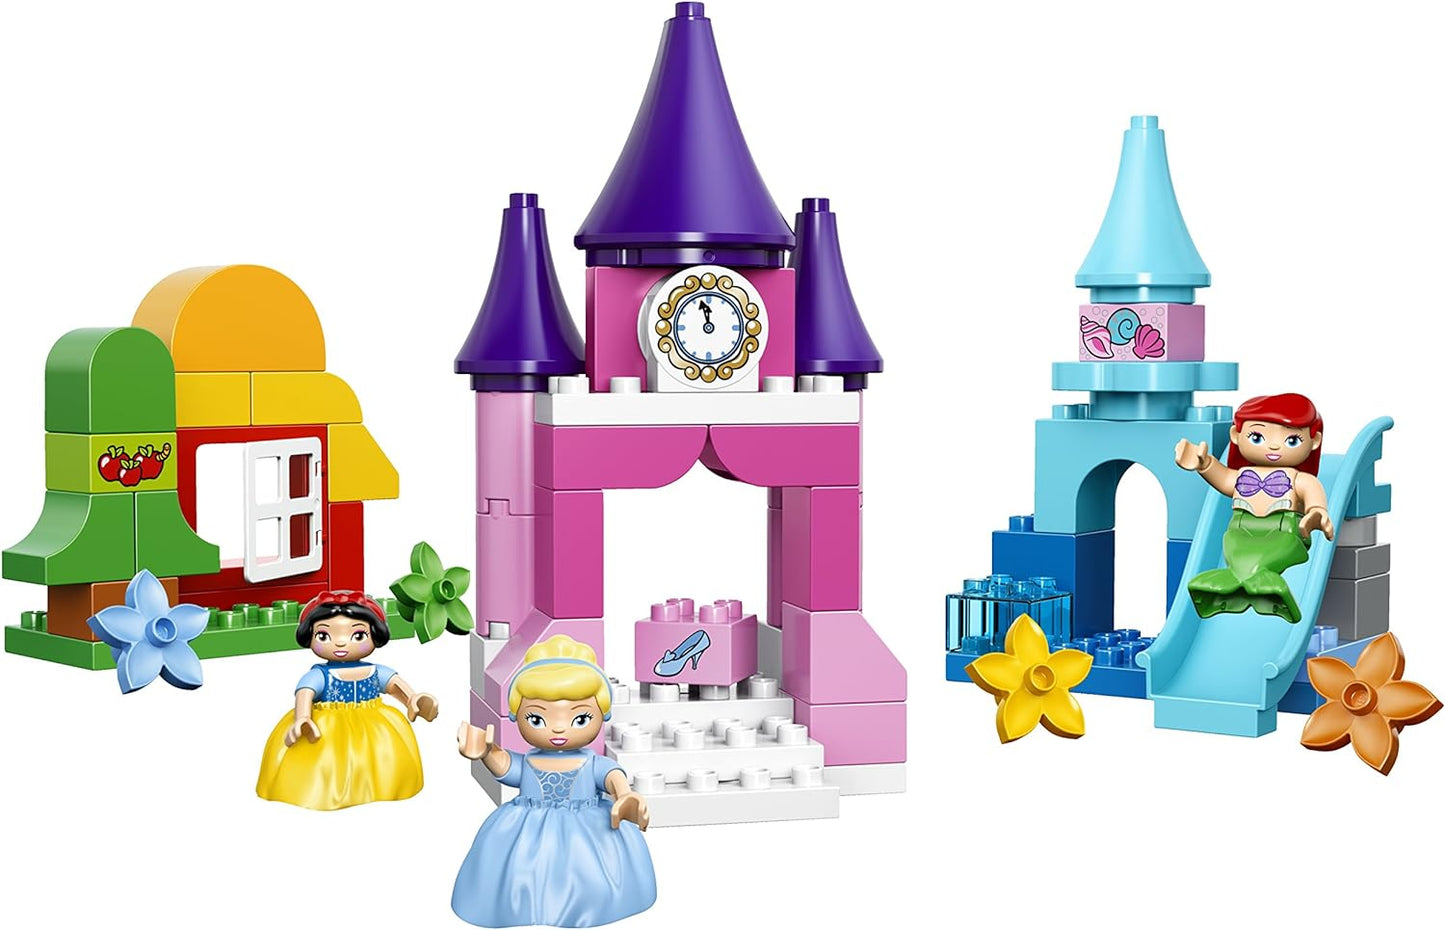 LEGO Disney Princess Collection 10596